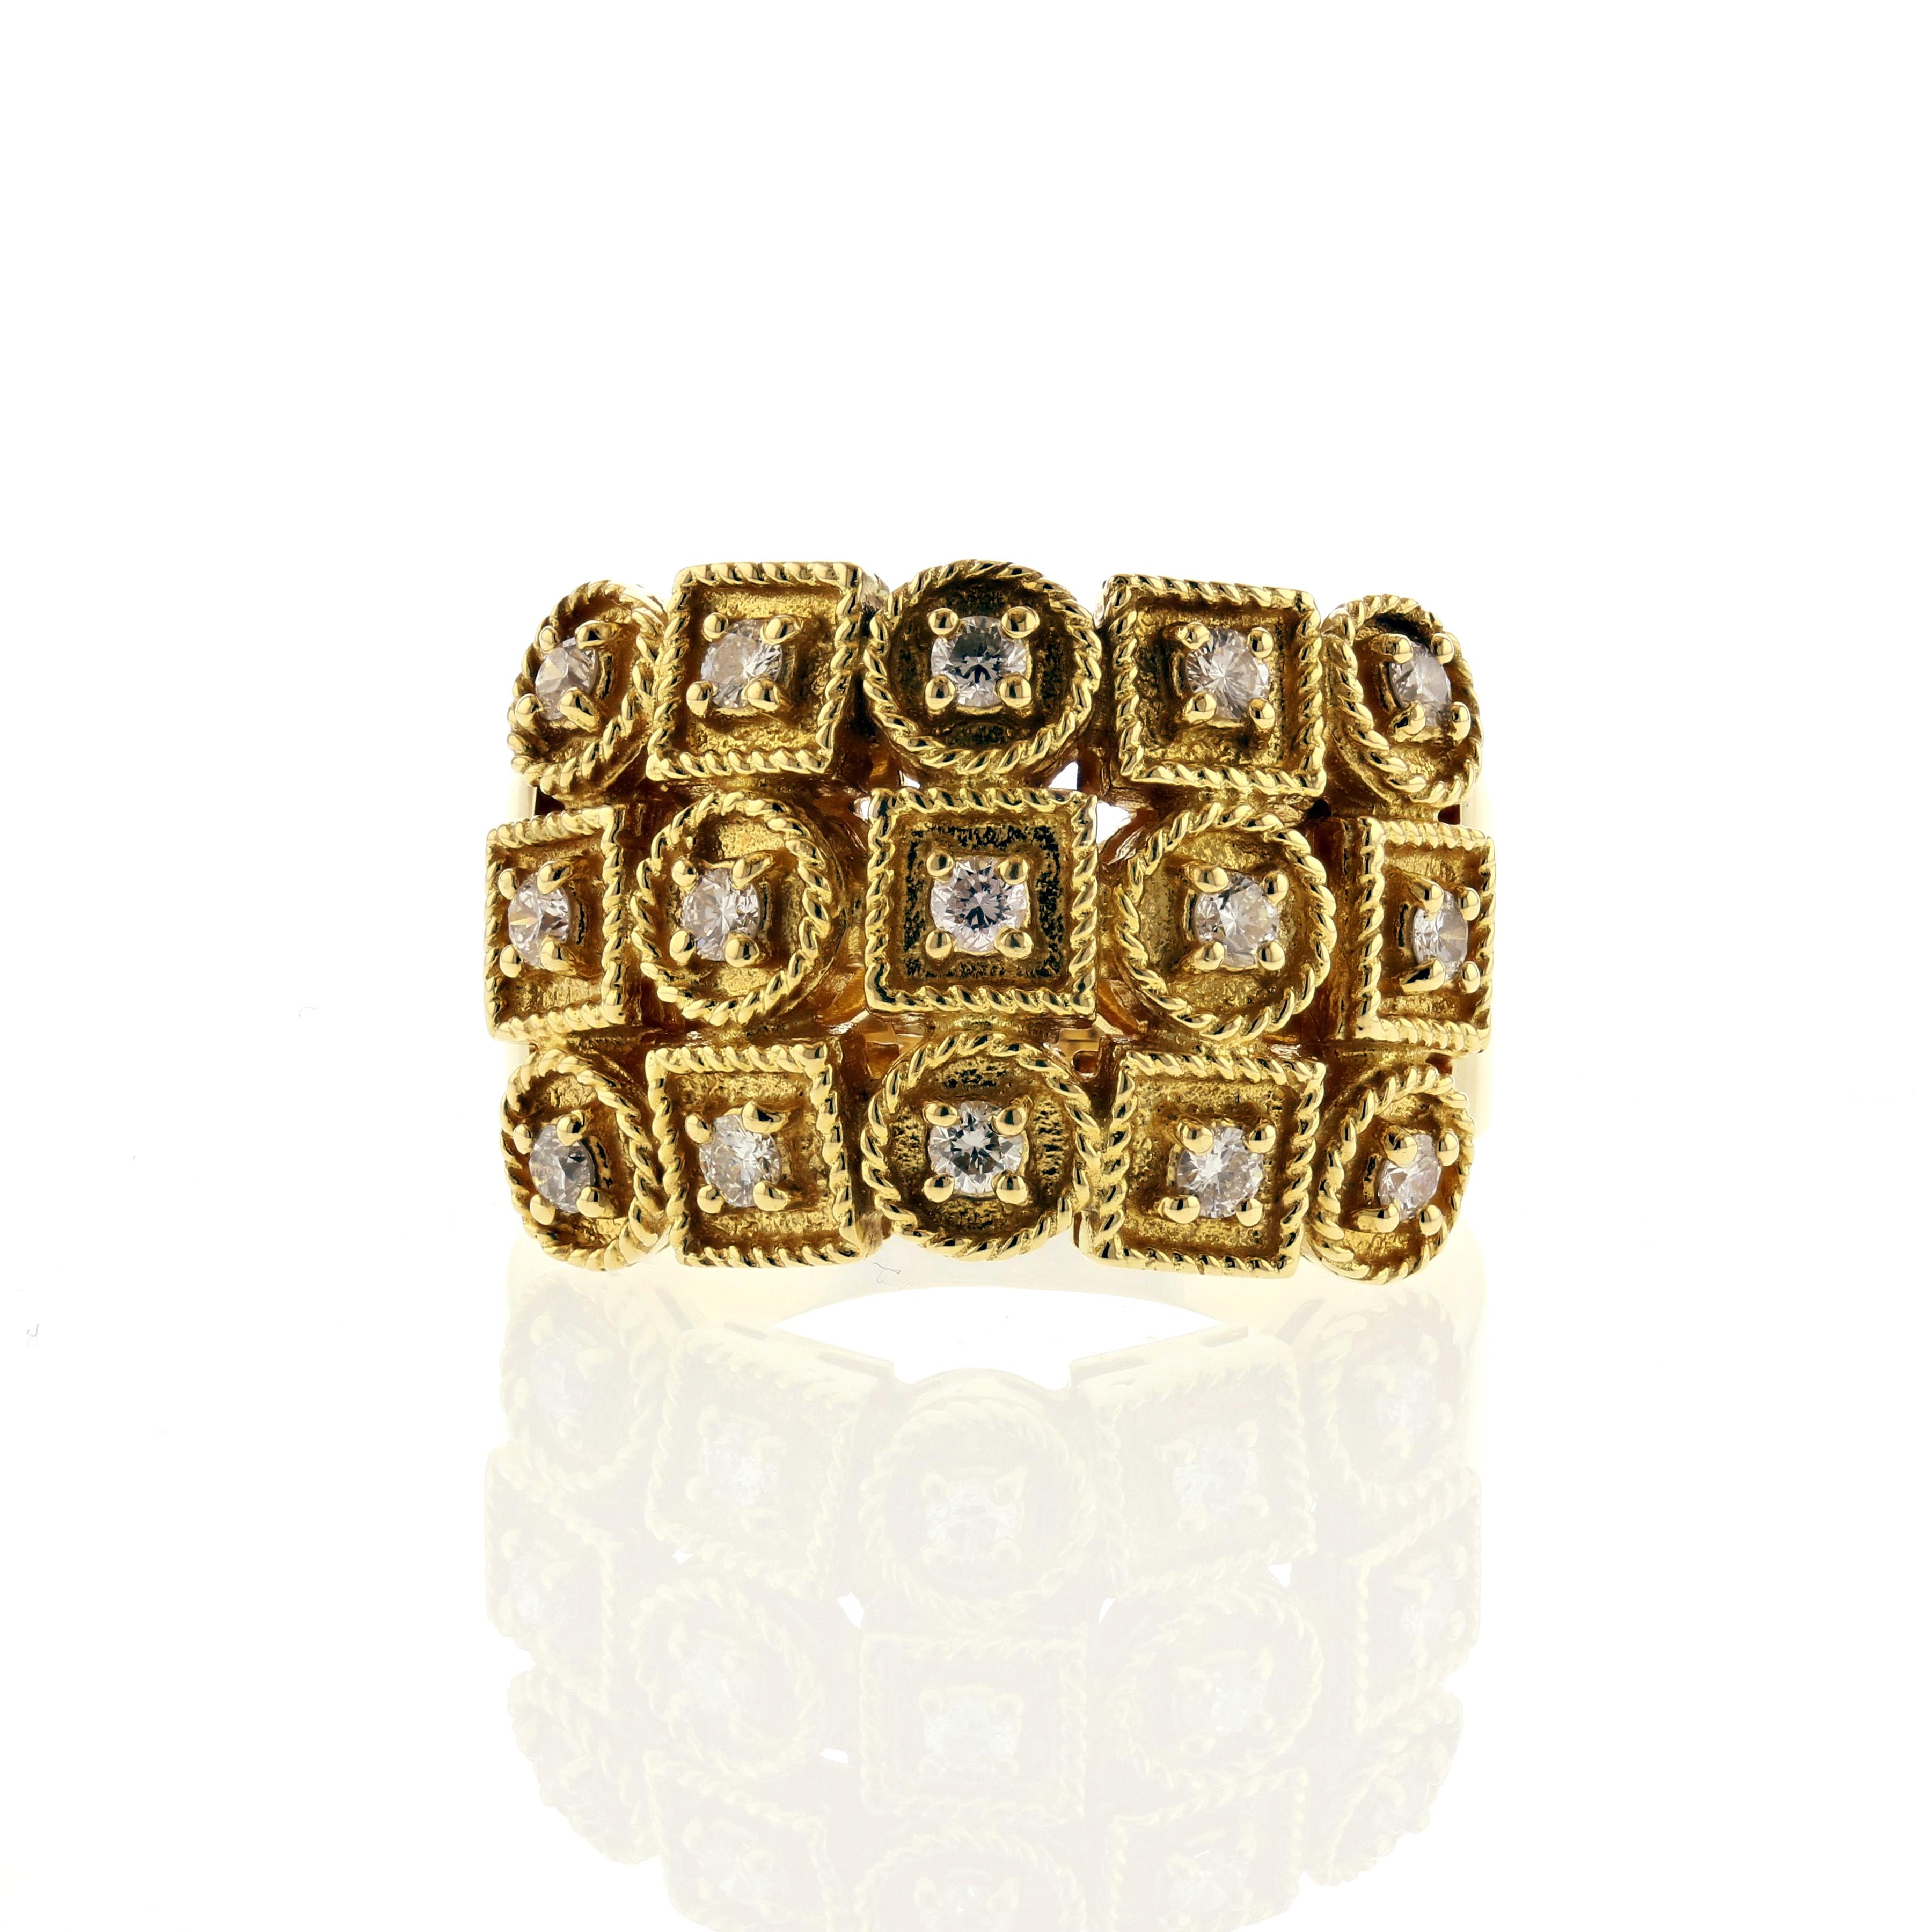 ring aus 18 Karat Gelbgold mit in Kreisen und Quadraten gefassten Diamanten.  Es gibt fünfzehn (15) runde Diamanten im Brillantschliff von insgesamt 0,75 Karat, Farbe G-H und Reinheit VS1-2.  Ring ist derzeit eine Größe 8 1/2 und kann angepasst